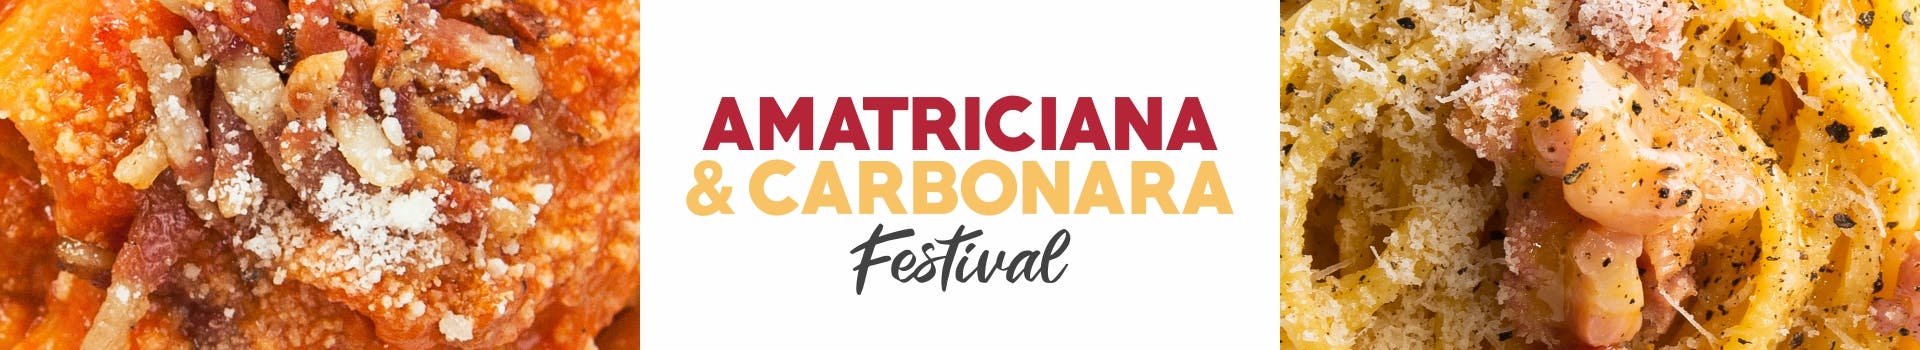 Amatriciana & Carbonara Festival Roma